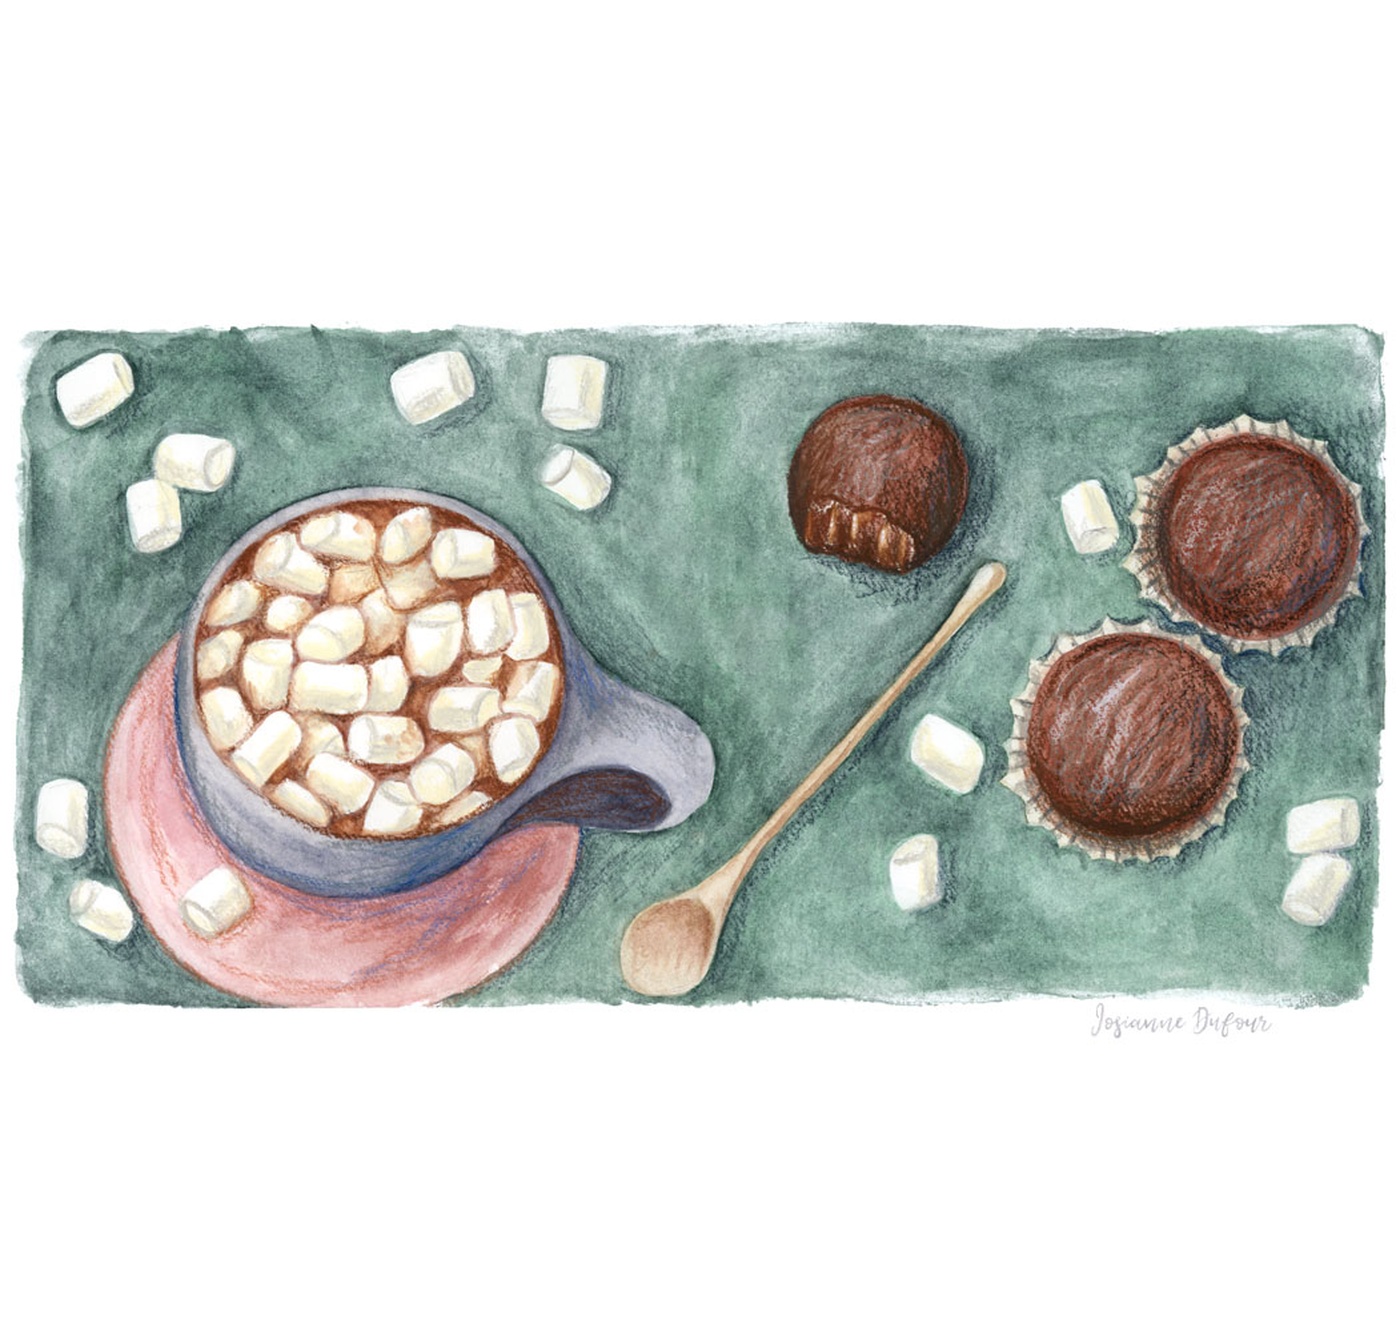 Josianne Dufour - Chocolat chaud et guimauves